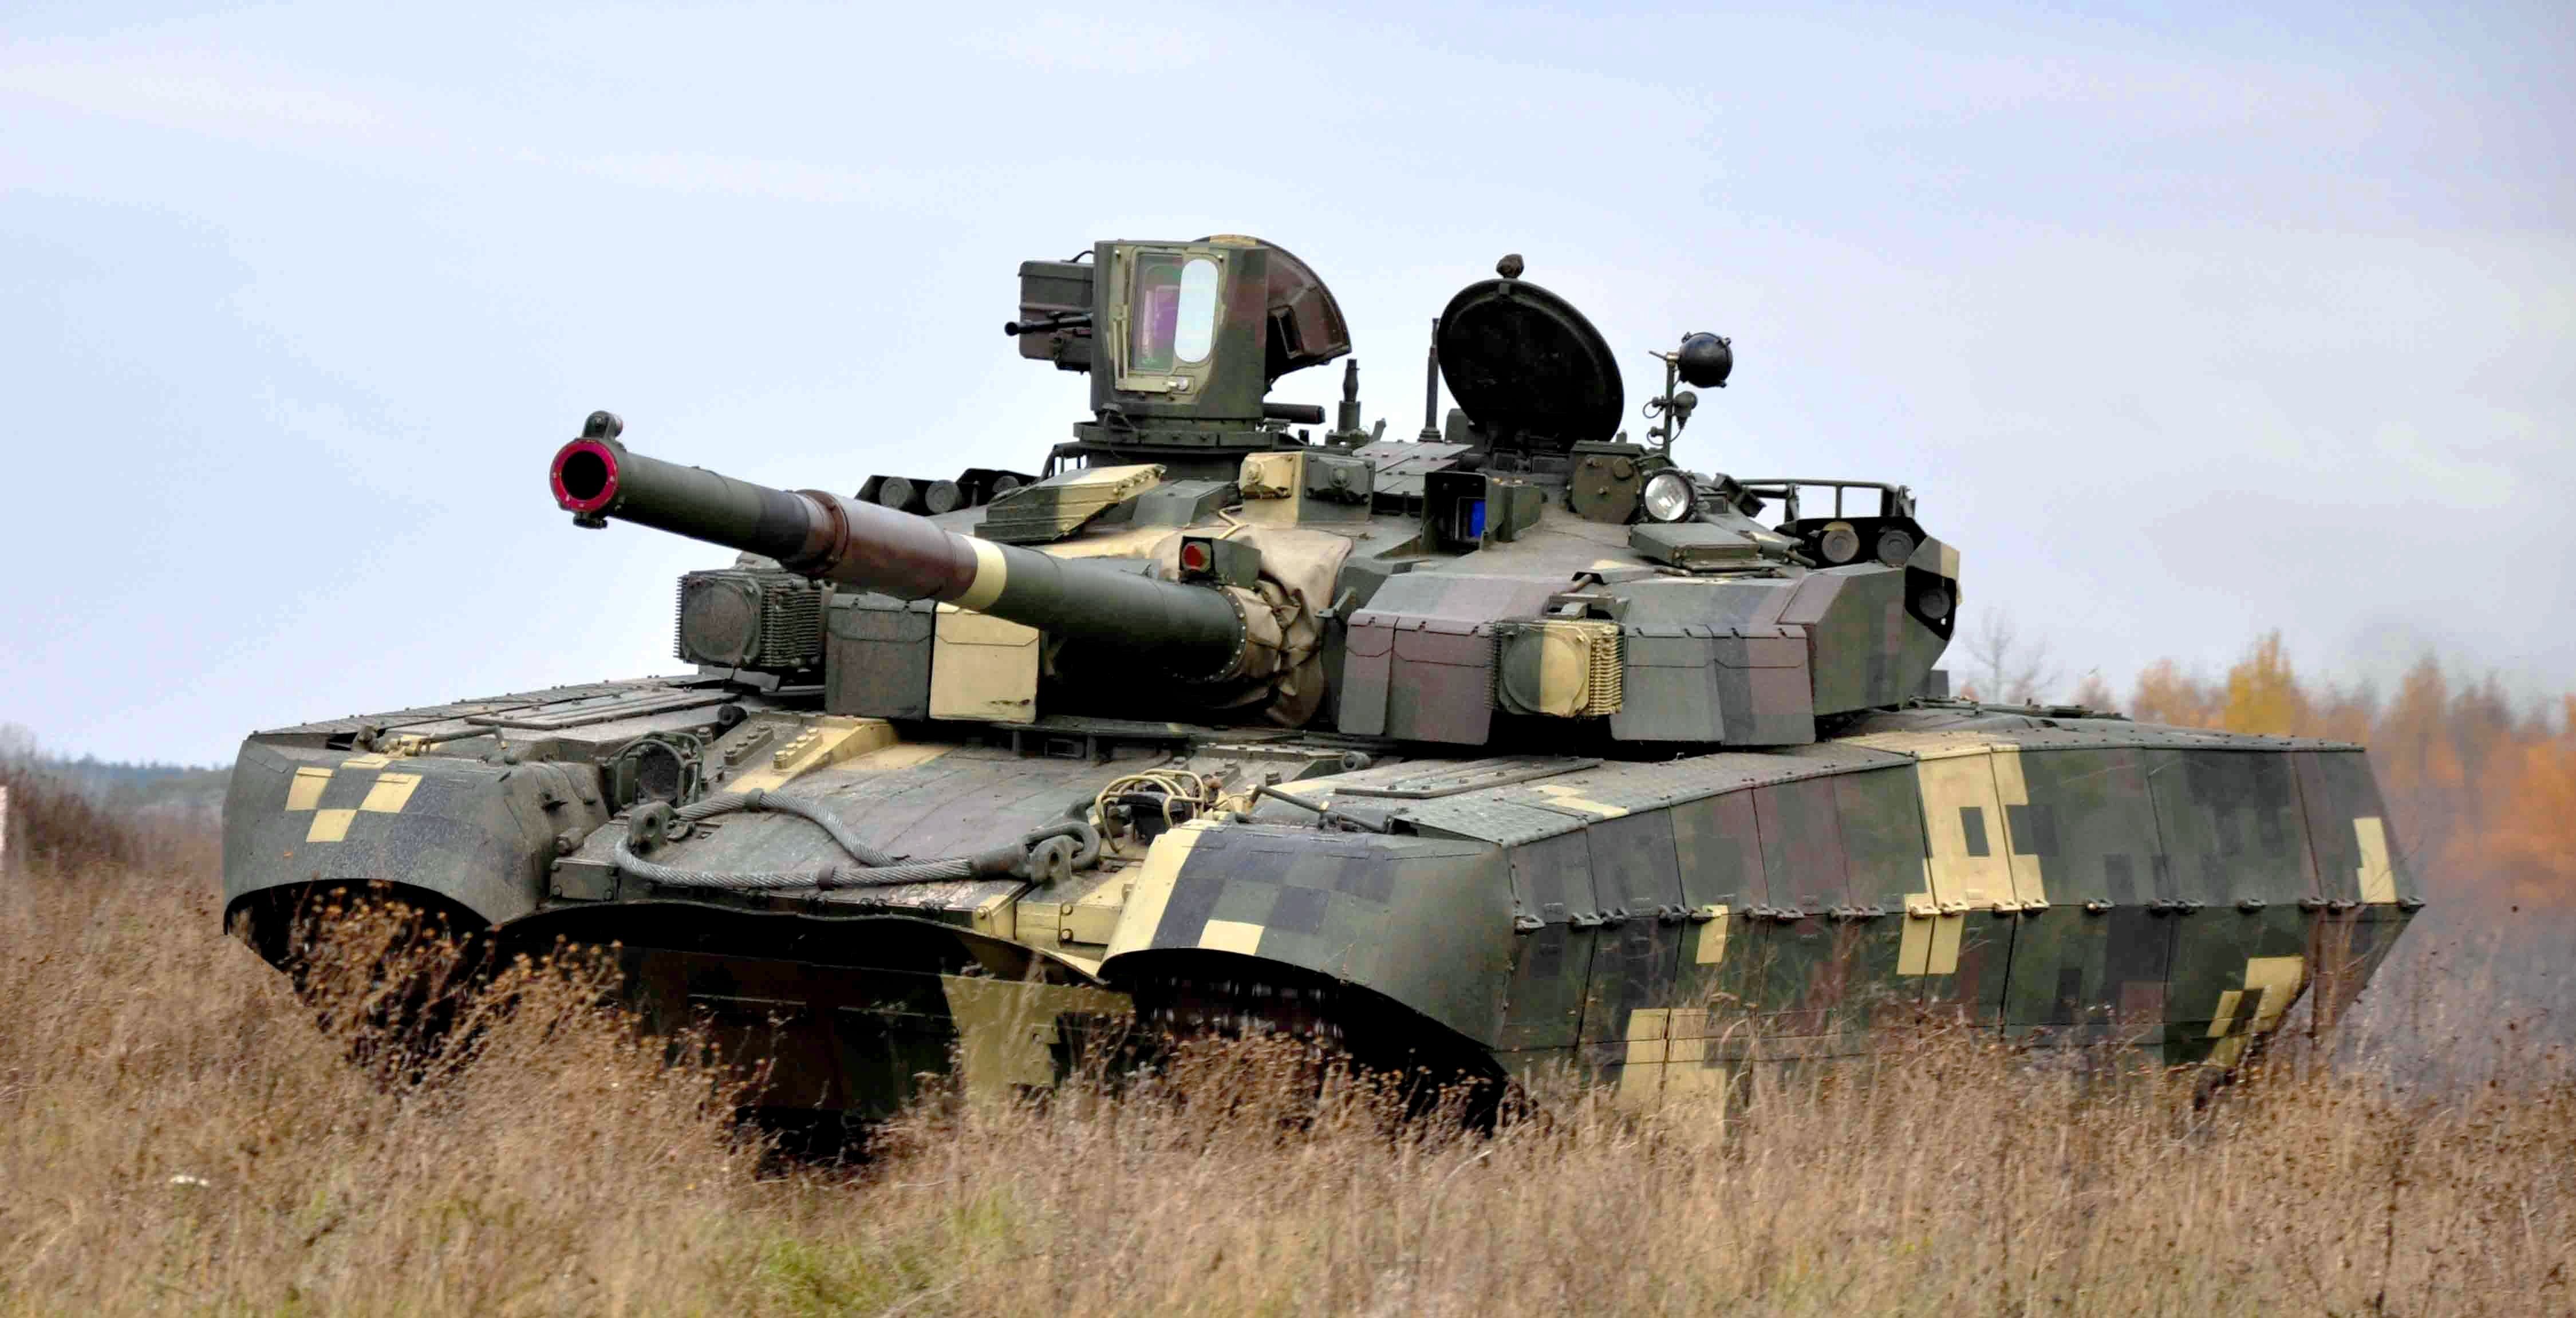 Die Streitkräfte zeigten einen äußerst seltenen ukrainischen Oplot-Panzer in Aktion - die Ukraine besitzt nur sechs solcher Kampffahrzeuge